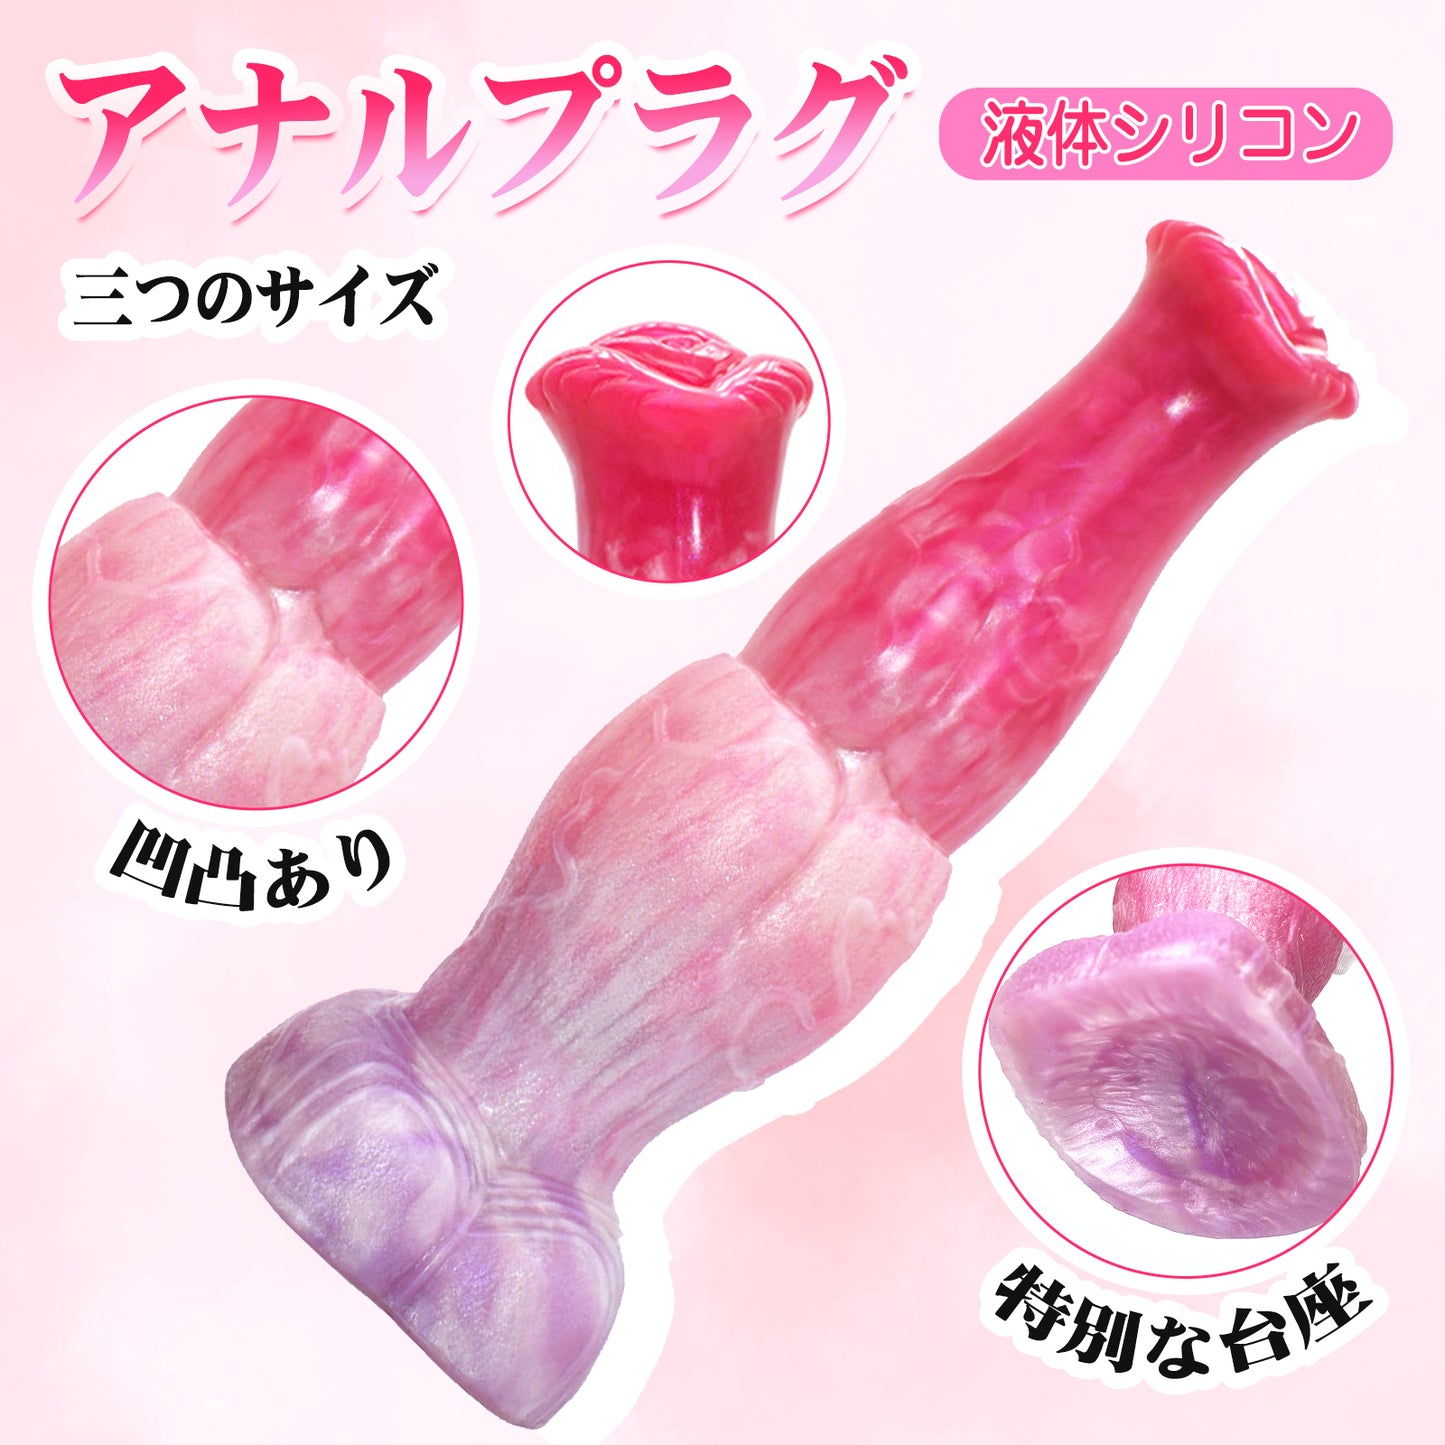 Maparon肛门插头肛门开发液体硅粉红色与基座